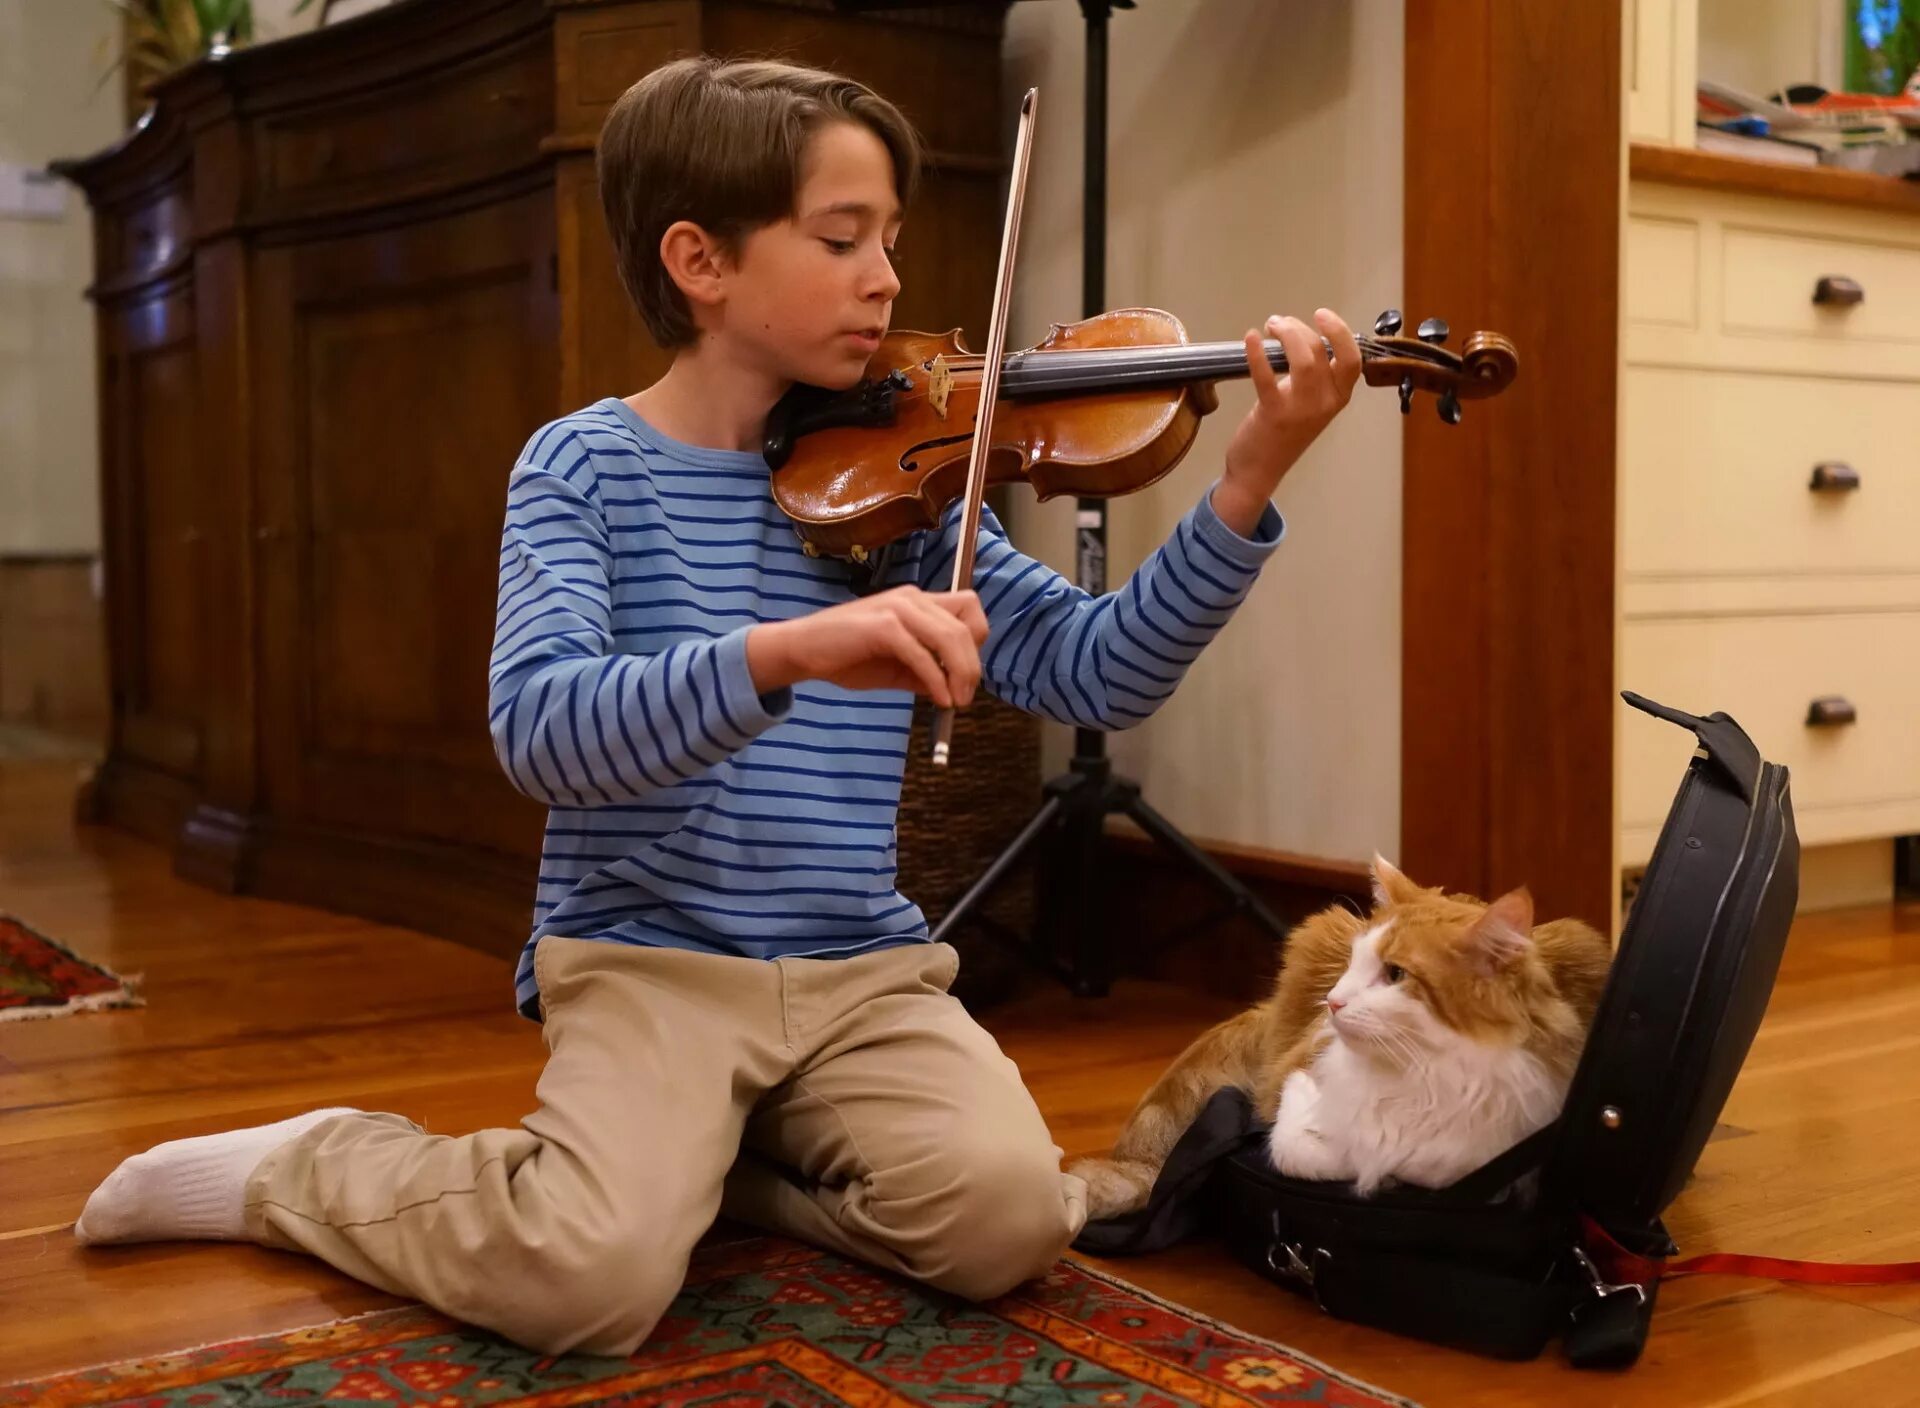 Violin meme. Люди играющие на музыкальных инструментах. Игра на музыкальных инструментах. Музыкальные инструменты для детей. Дети играющие на скрипке.